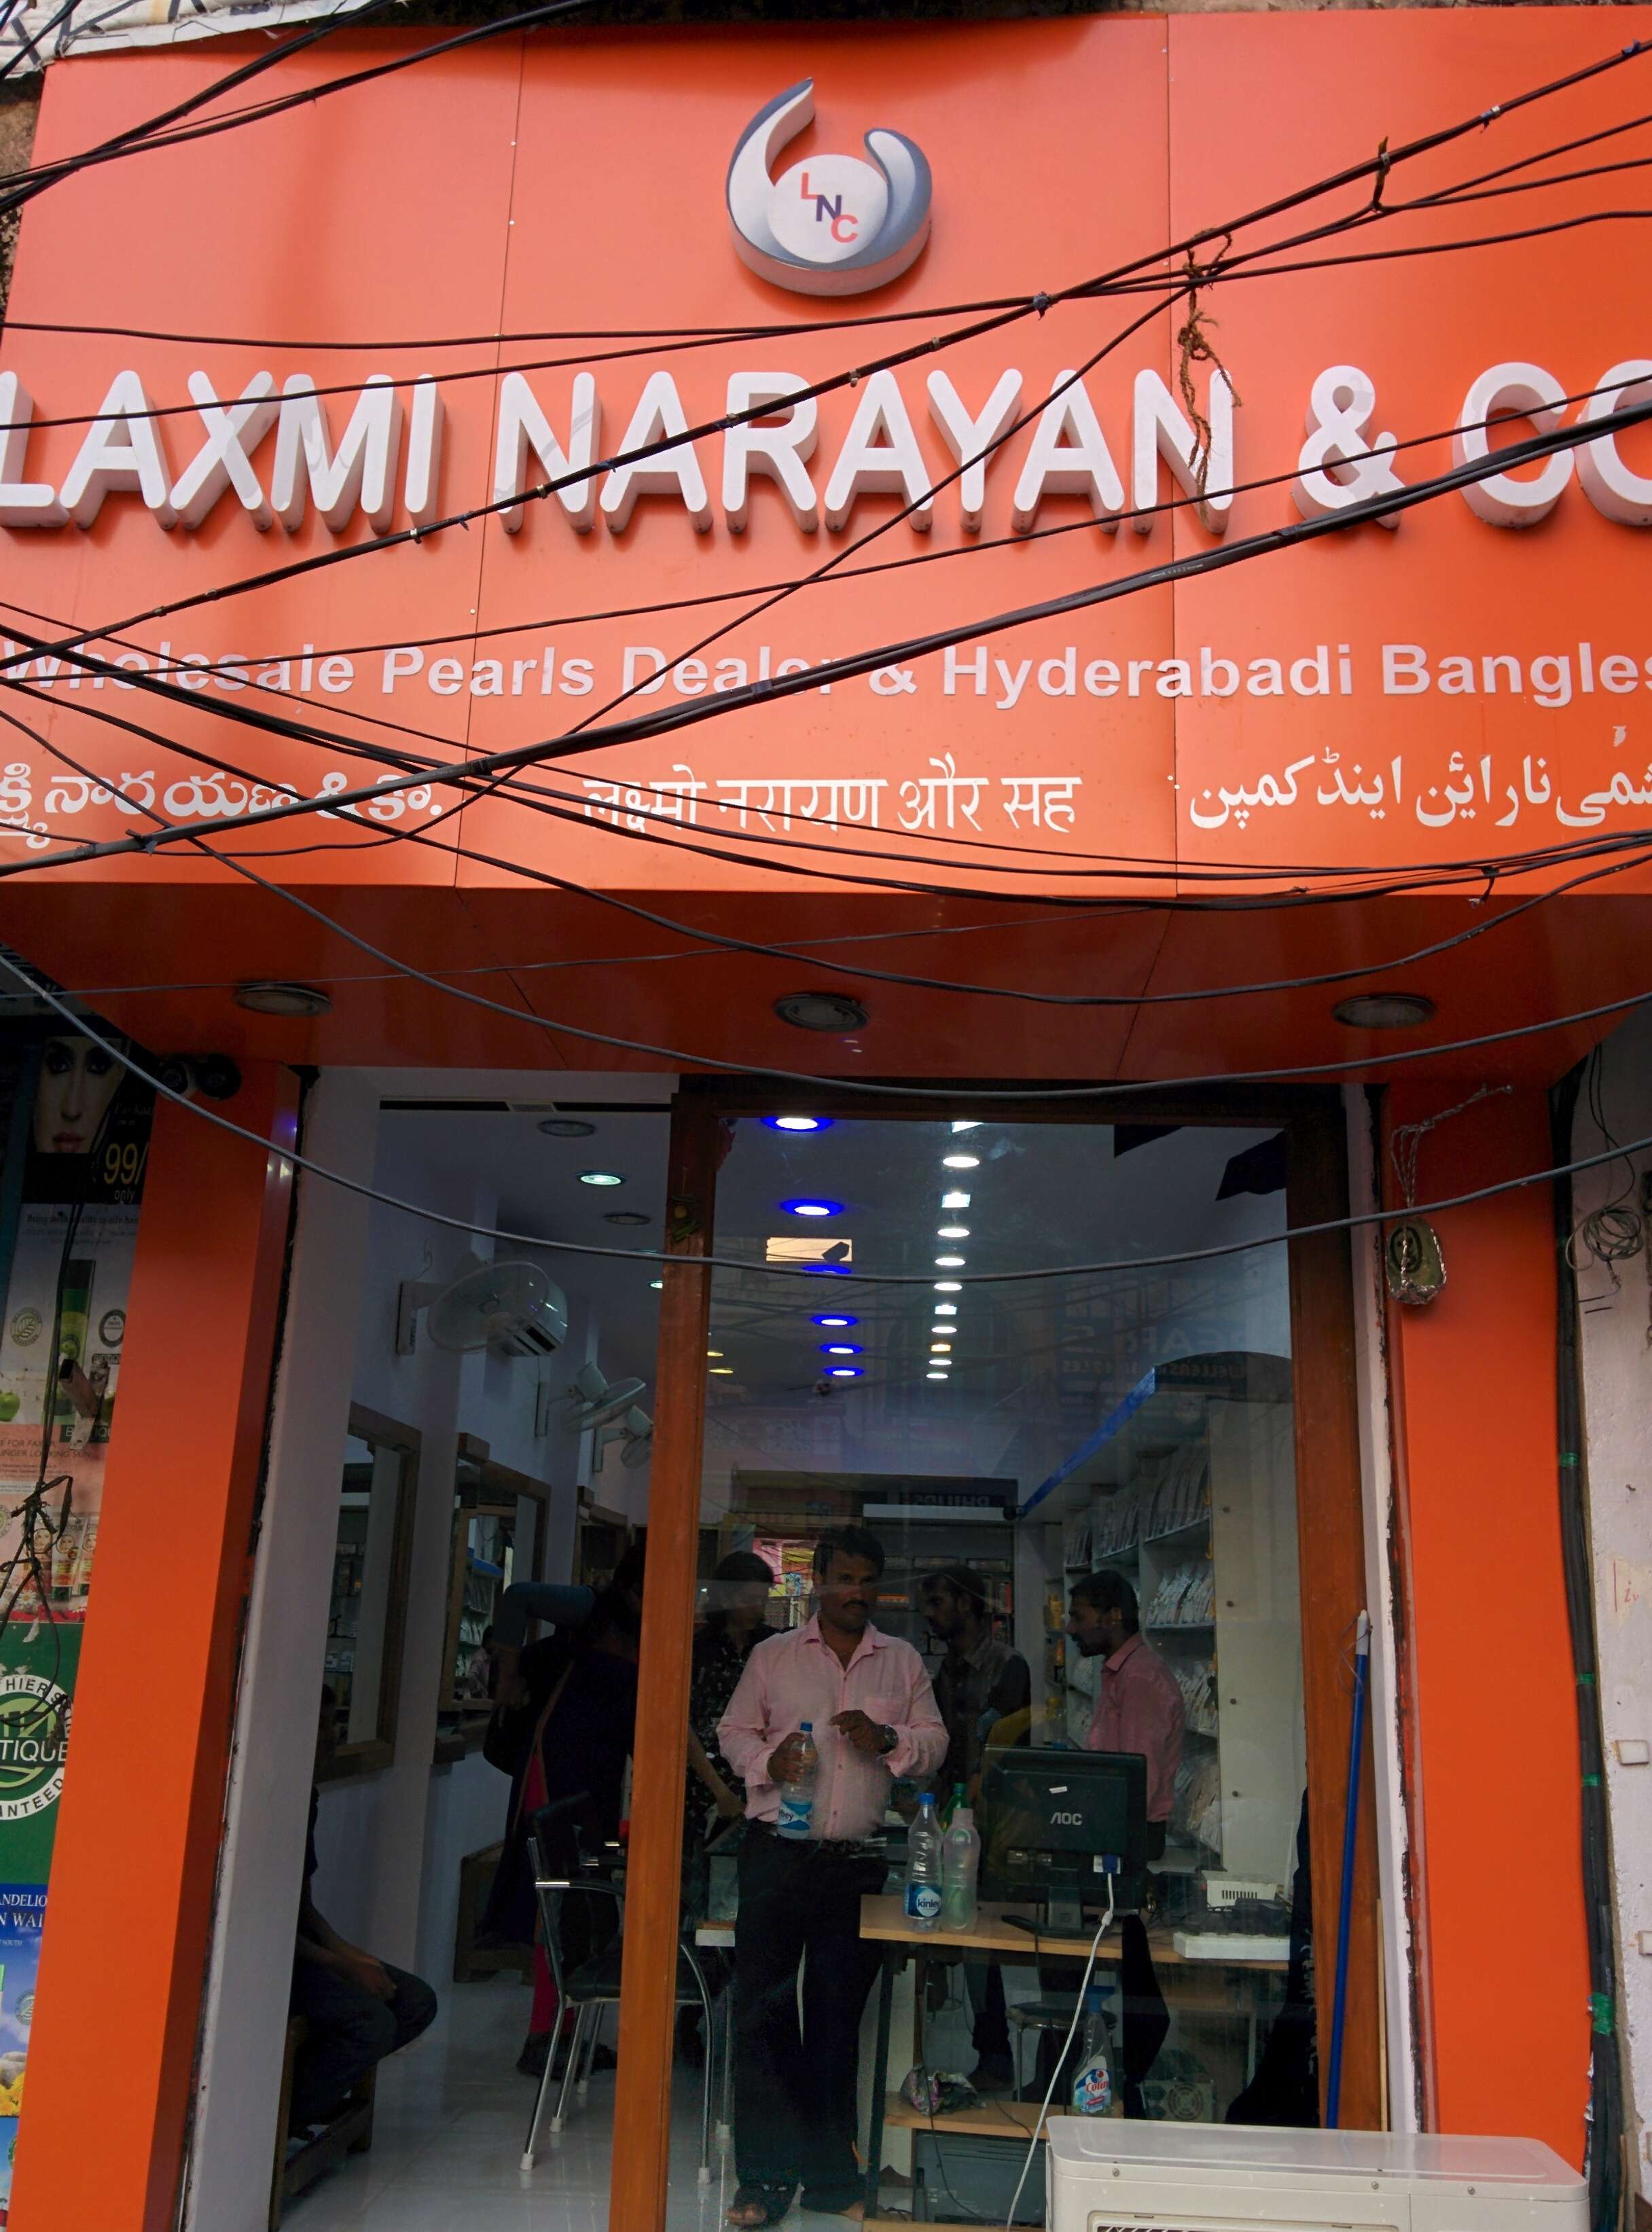 Laxmi Narayan & Co Pearls And Bangles 